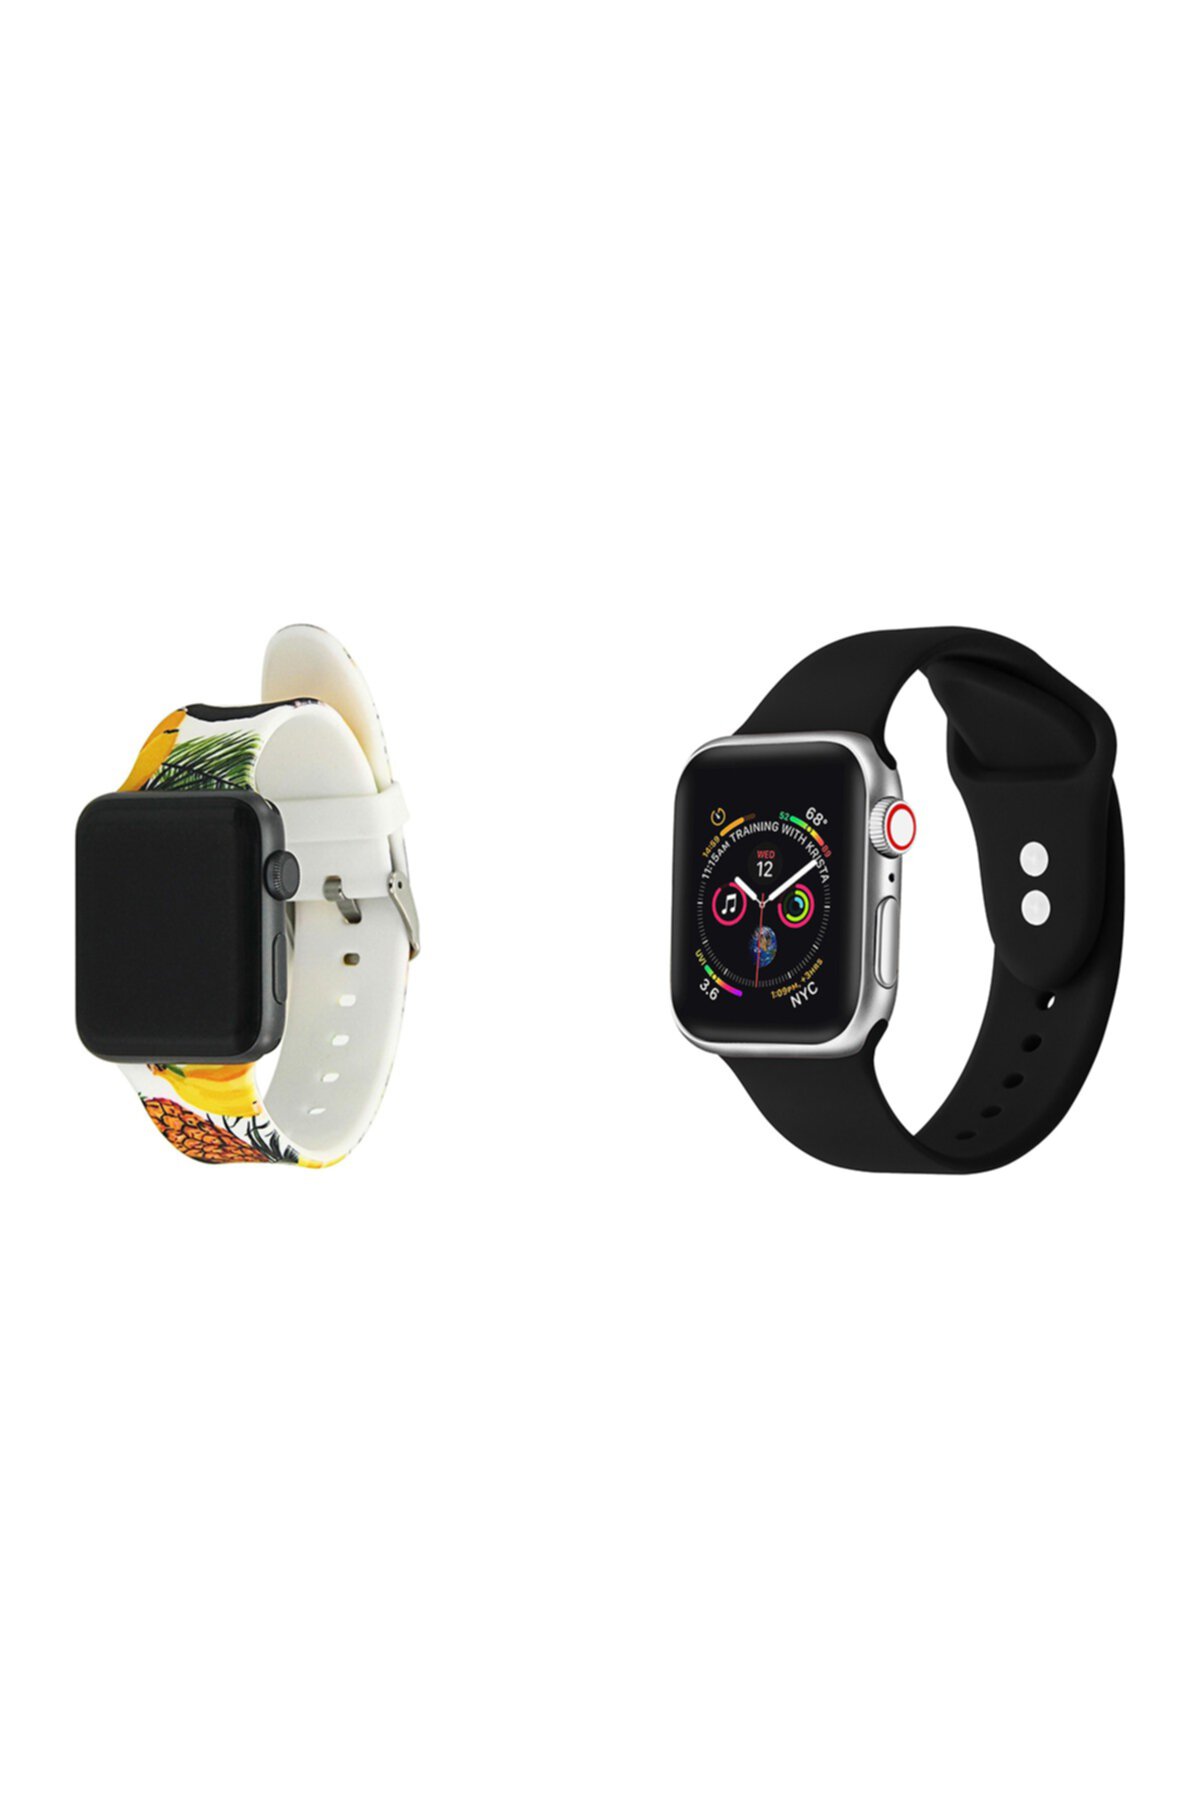 Мульти силиконовые ремешки для 38-мм / 40-мм Apple Watch Series 1, 2, 3, 4, 5 - упаковка из 2 POSH TECH